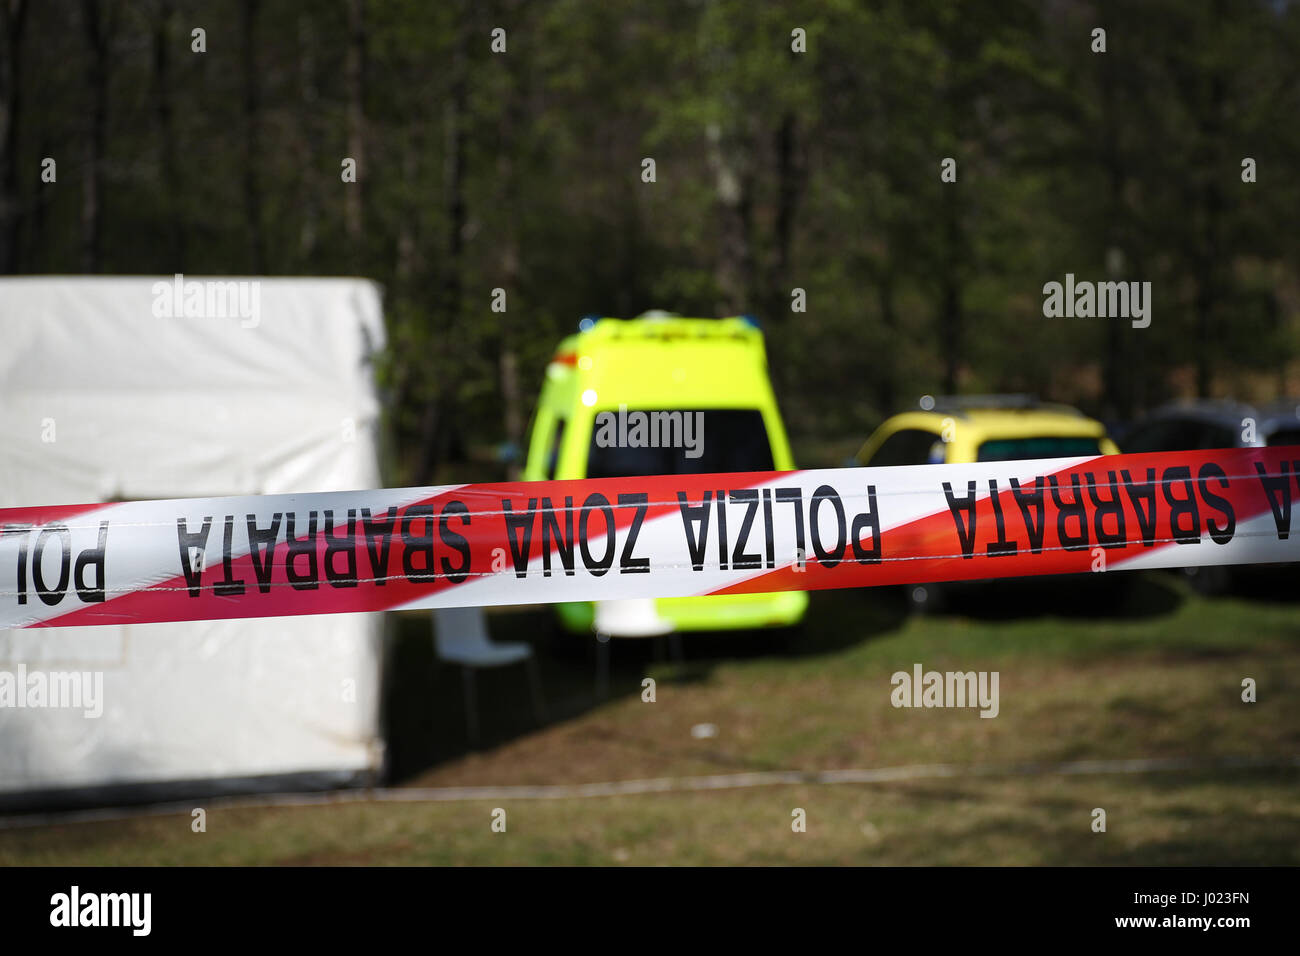 Rote und weiße Polizeiabsperrung um ein Verbrechen-Szene Zelt in einem Wald mit Krankenwagen, Polizei und Gerichtsmedizin Fahrzeuge Stockfoto